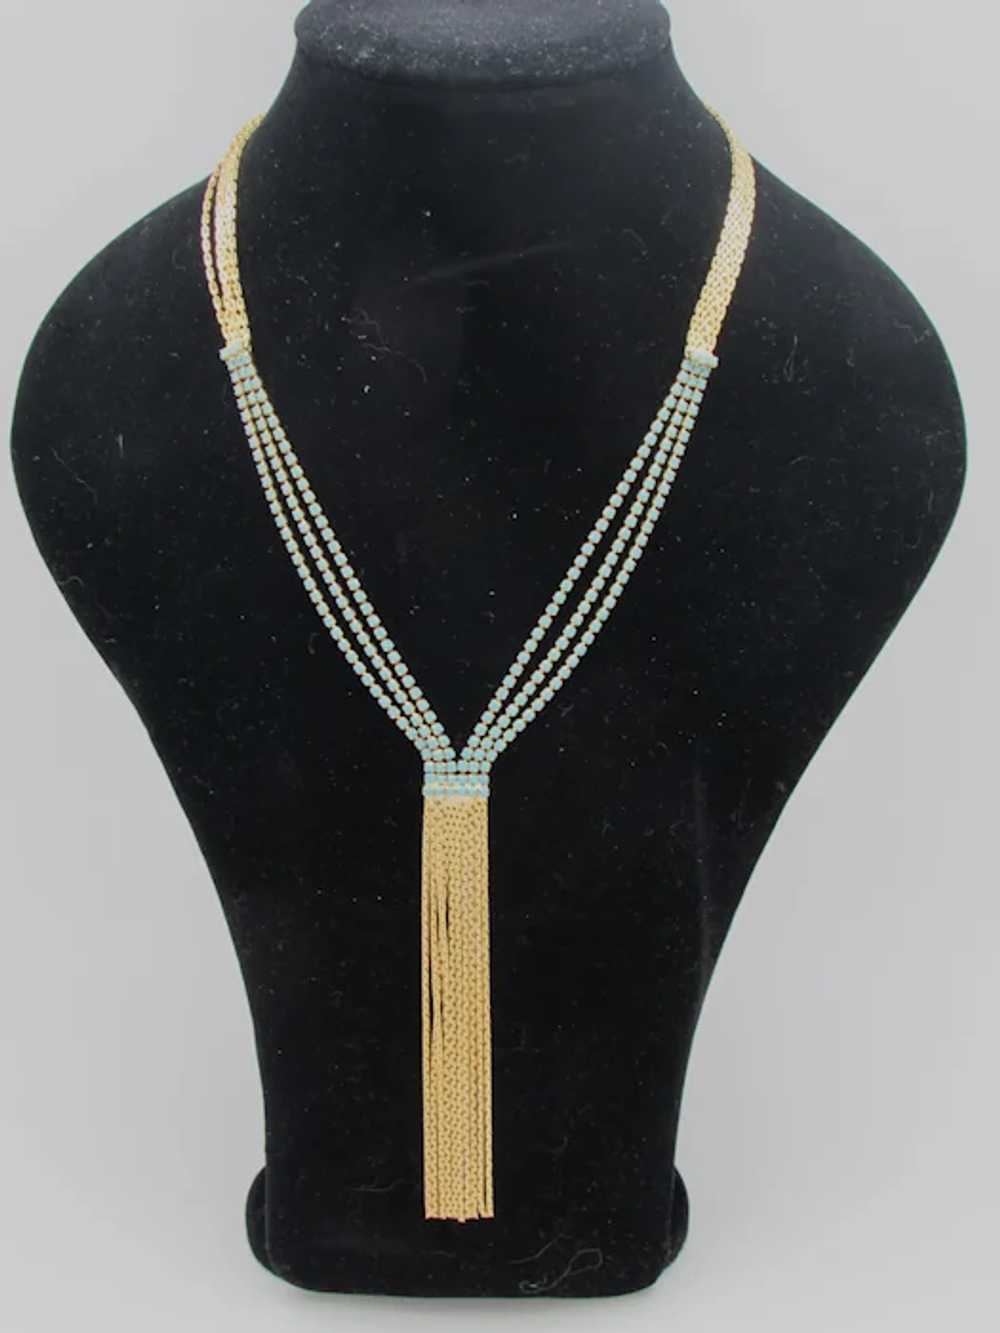 Deep V-Style Necklace with Rhinestones and Fringe - image 3